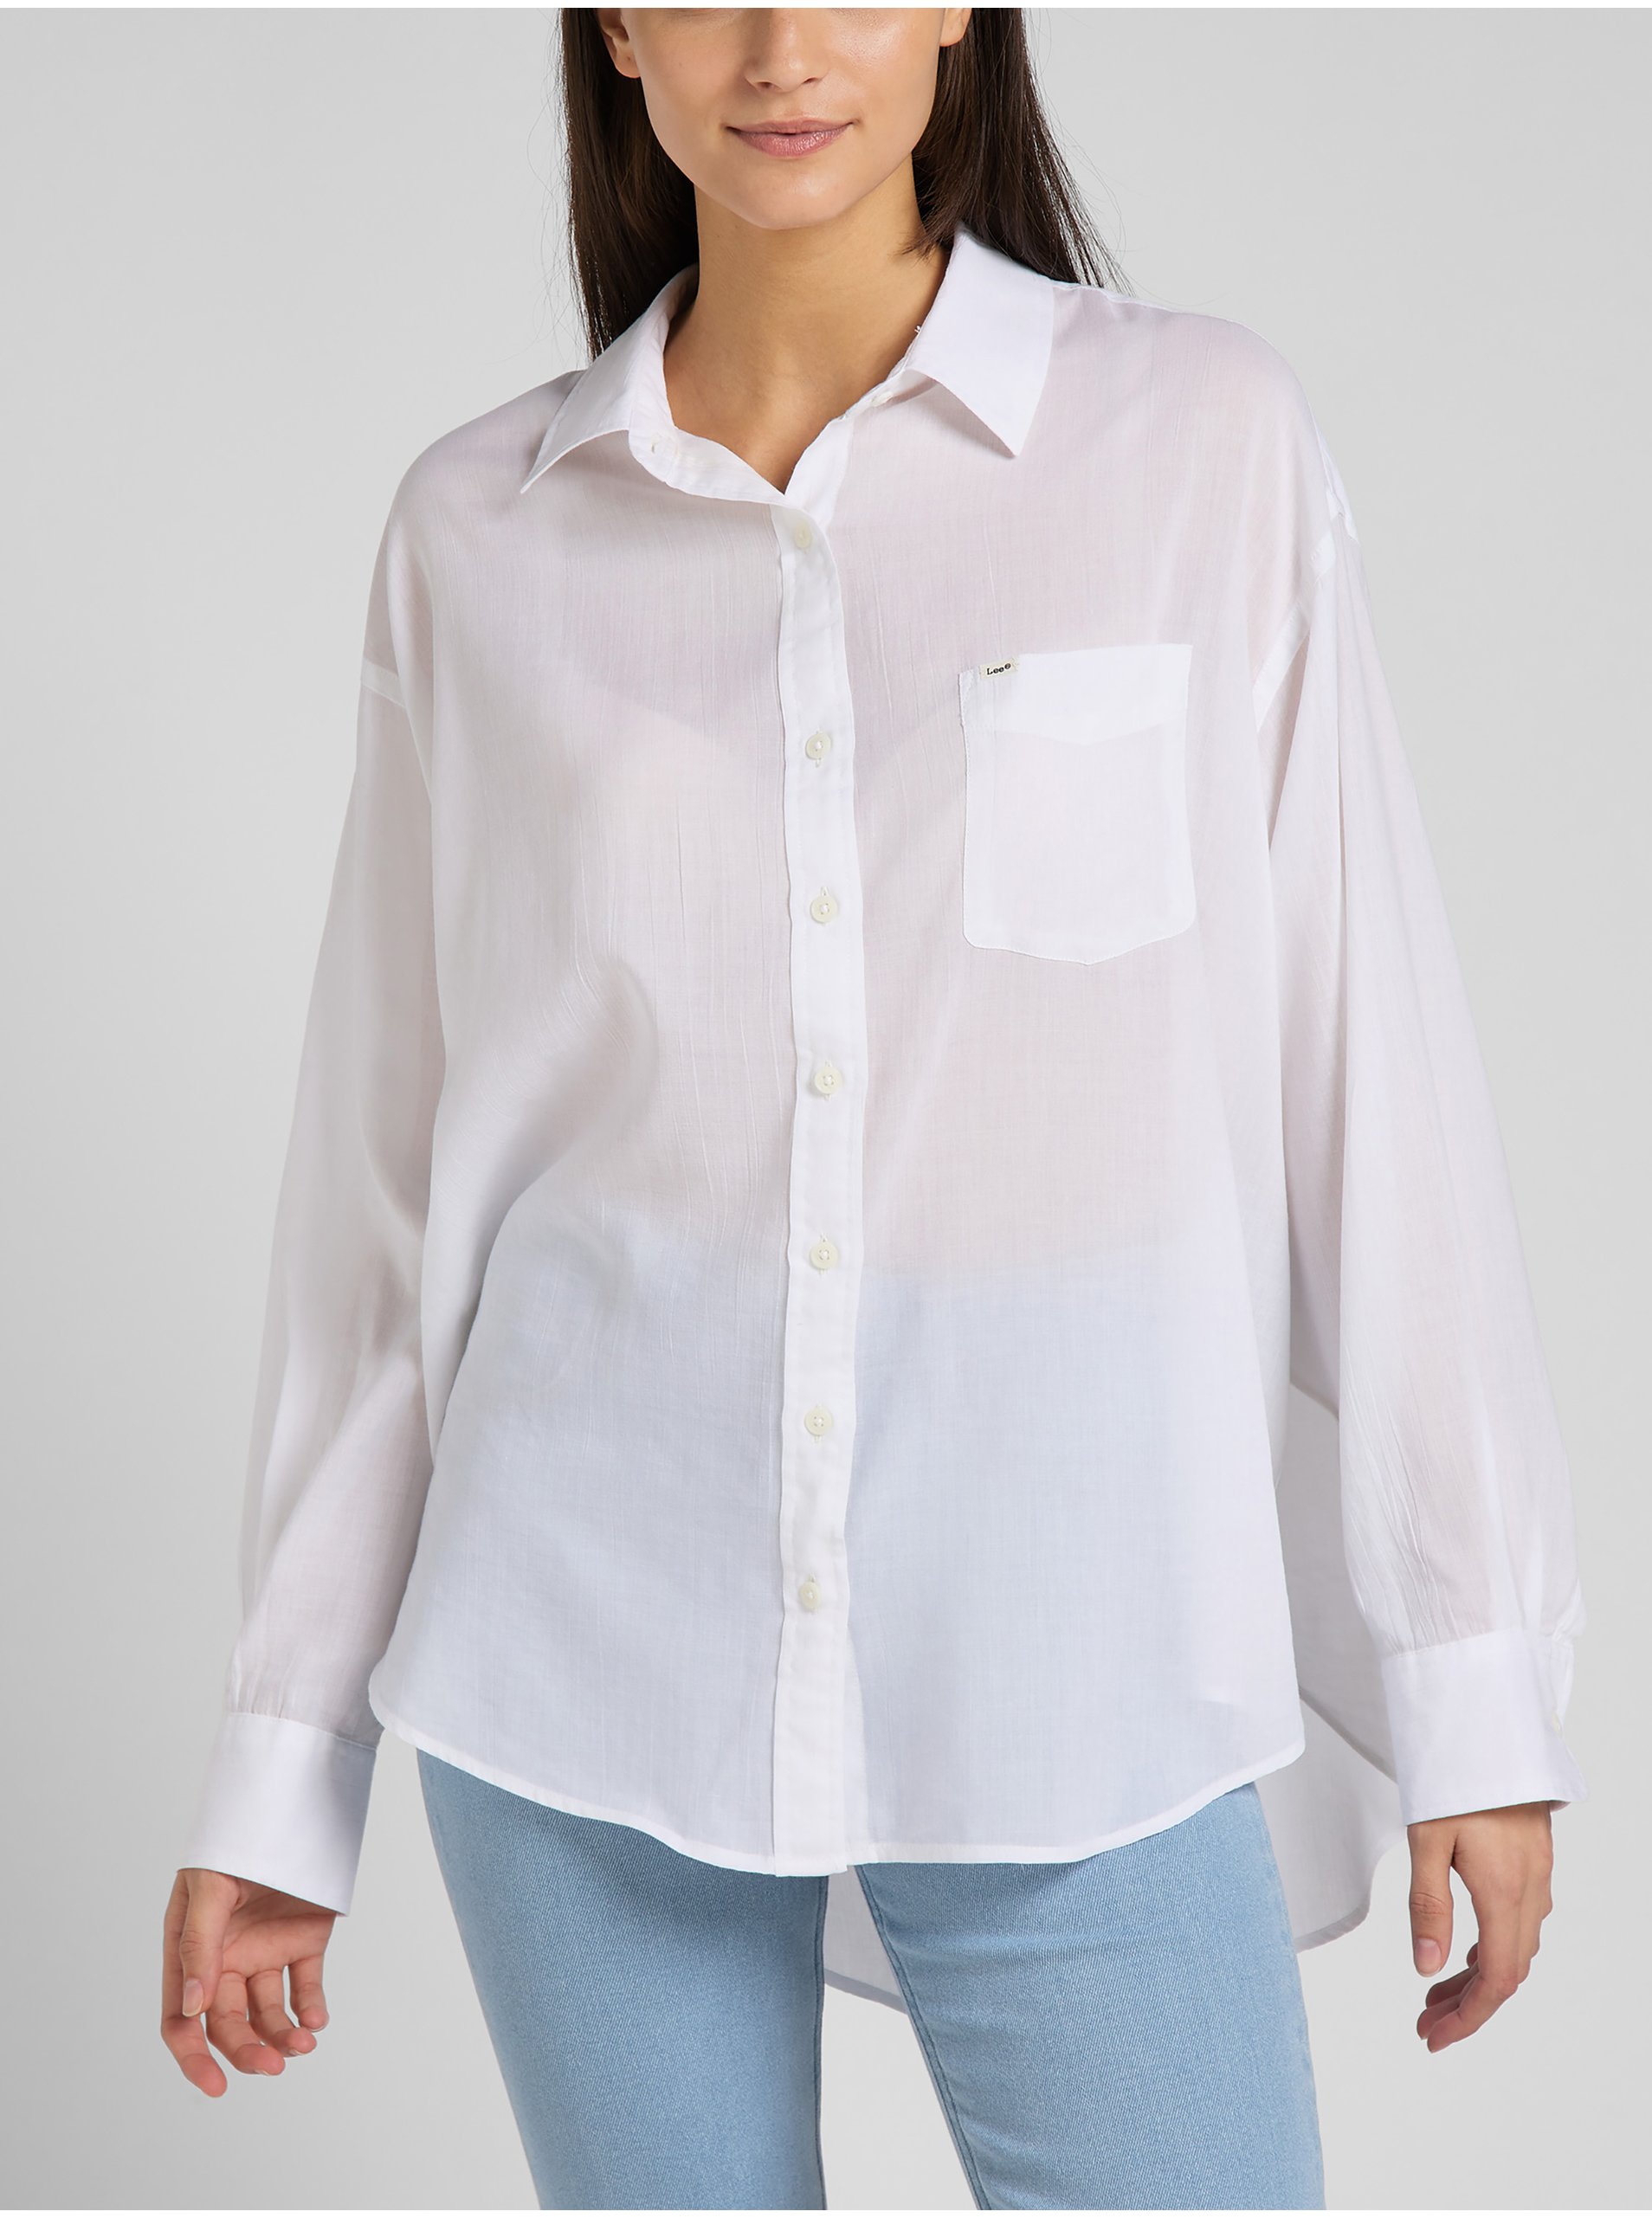 E-shop Bílá dámská volná košile s prodlouženou zadní částí Lee